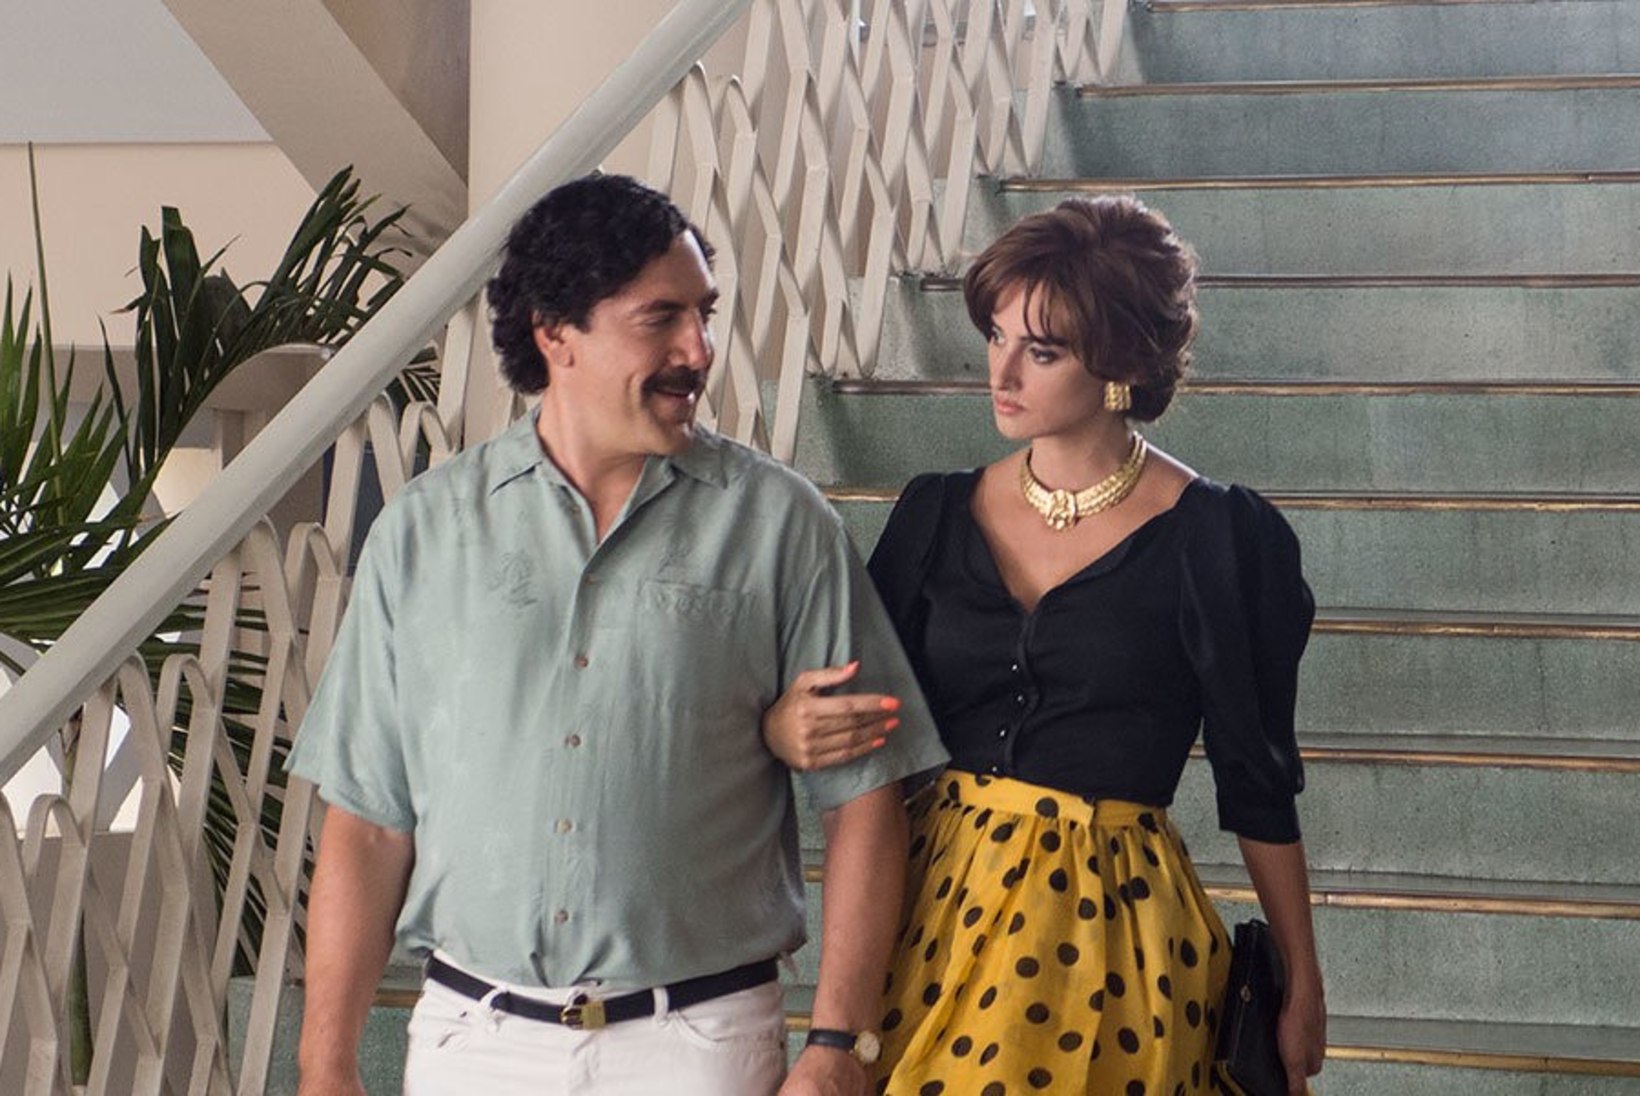 ARVUSTUS | „Pablo ja Escobari vahel“ ehk Film, mille tegemisel unustati ära loogiline mõtlemine